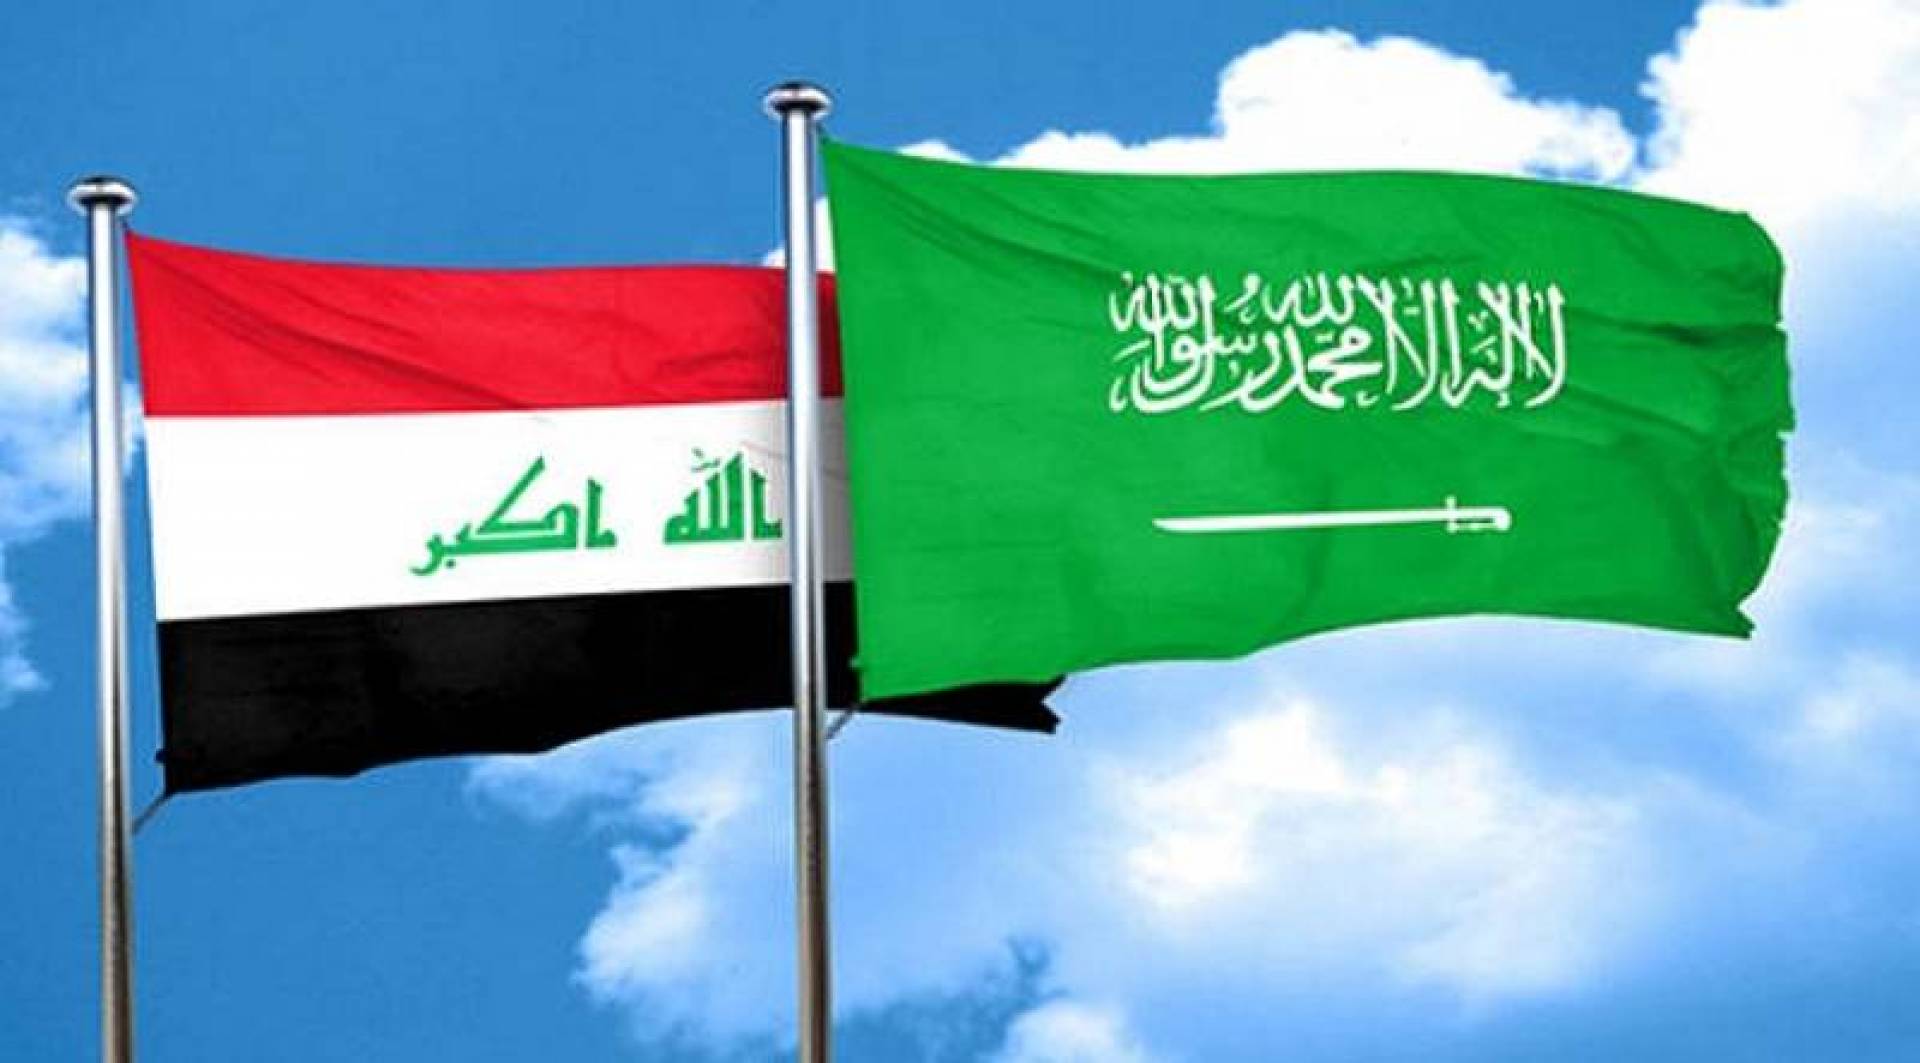  جولة مباحثات عراقية سعودية "خامسة" بشأن الربط الكهربائي الخليجي